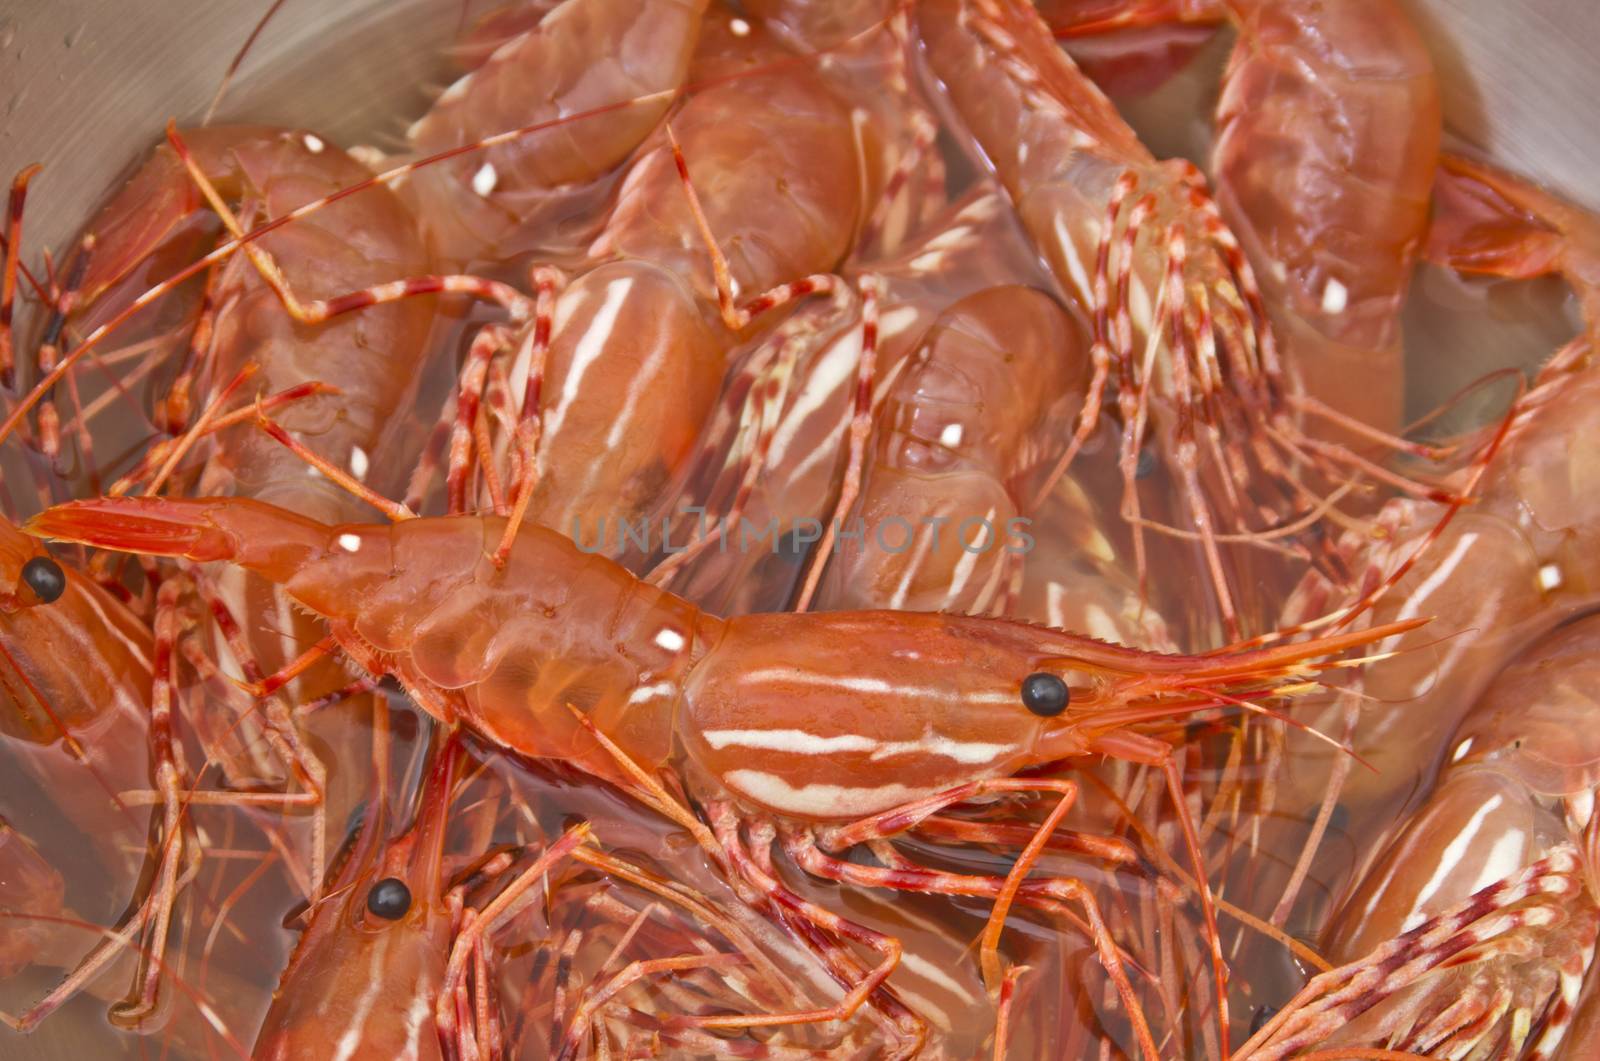 Fresh live shrimp in stainless steel bowl